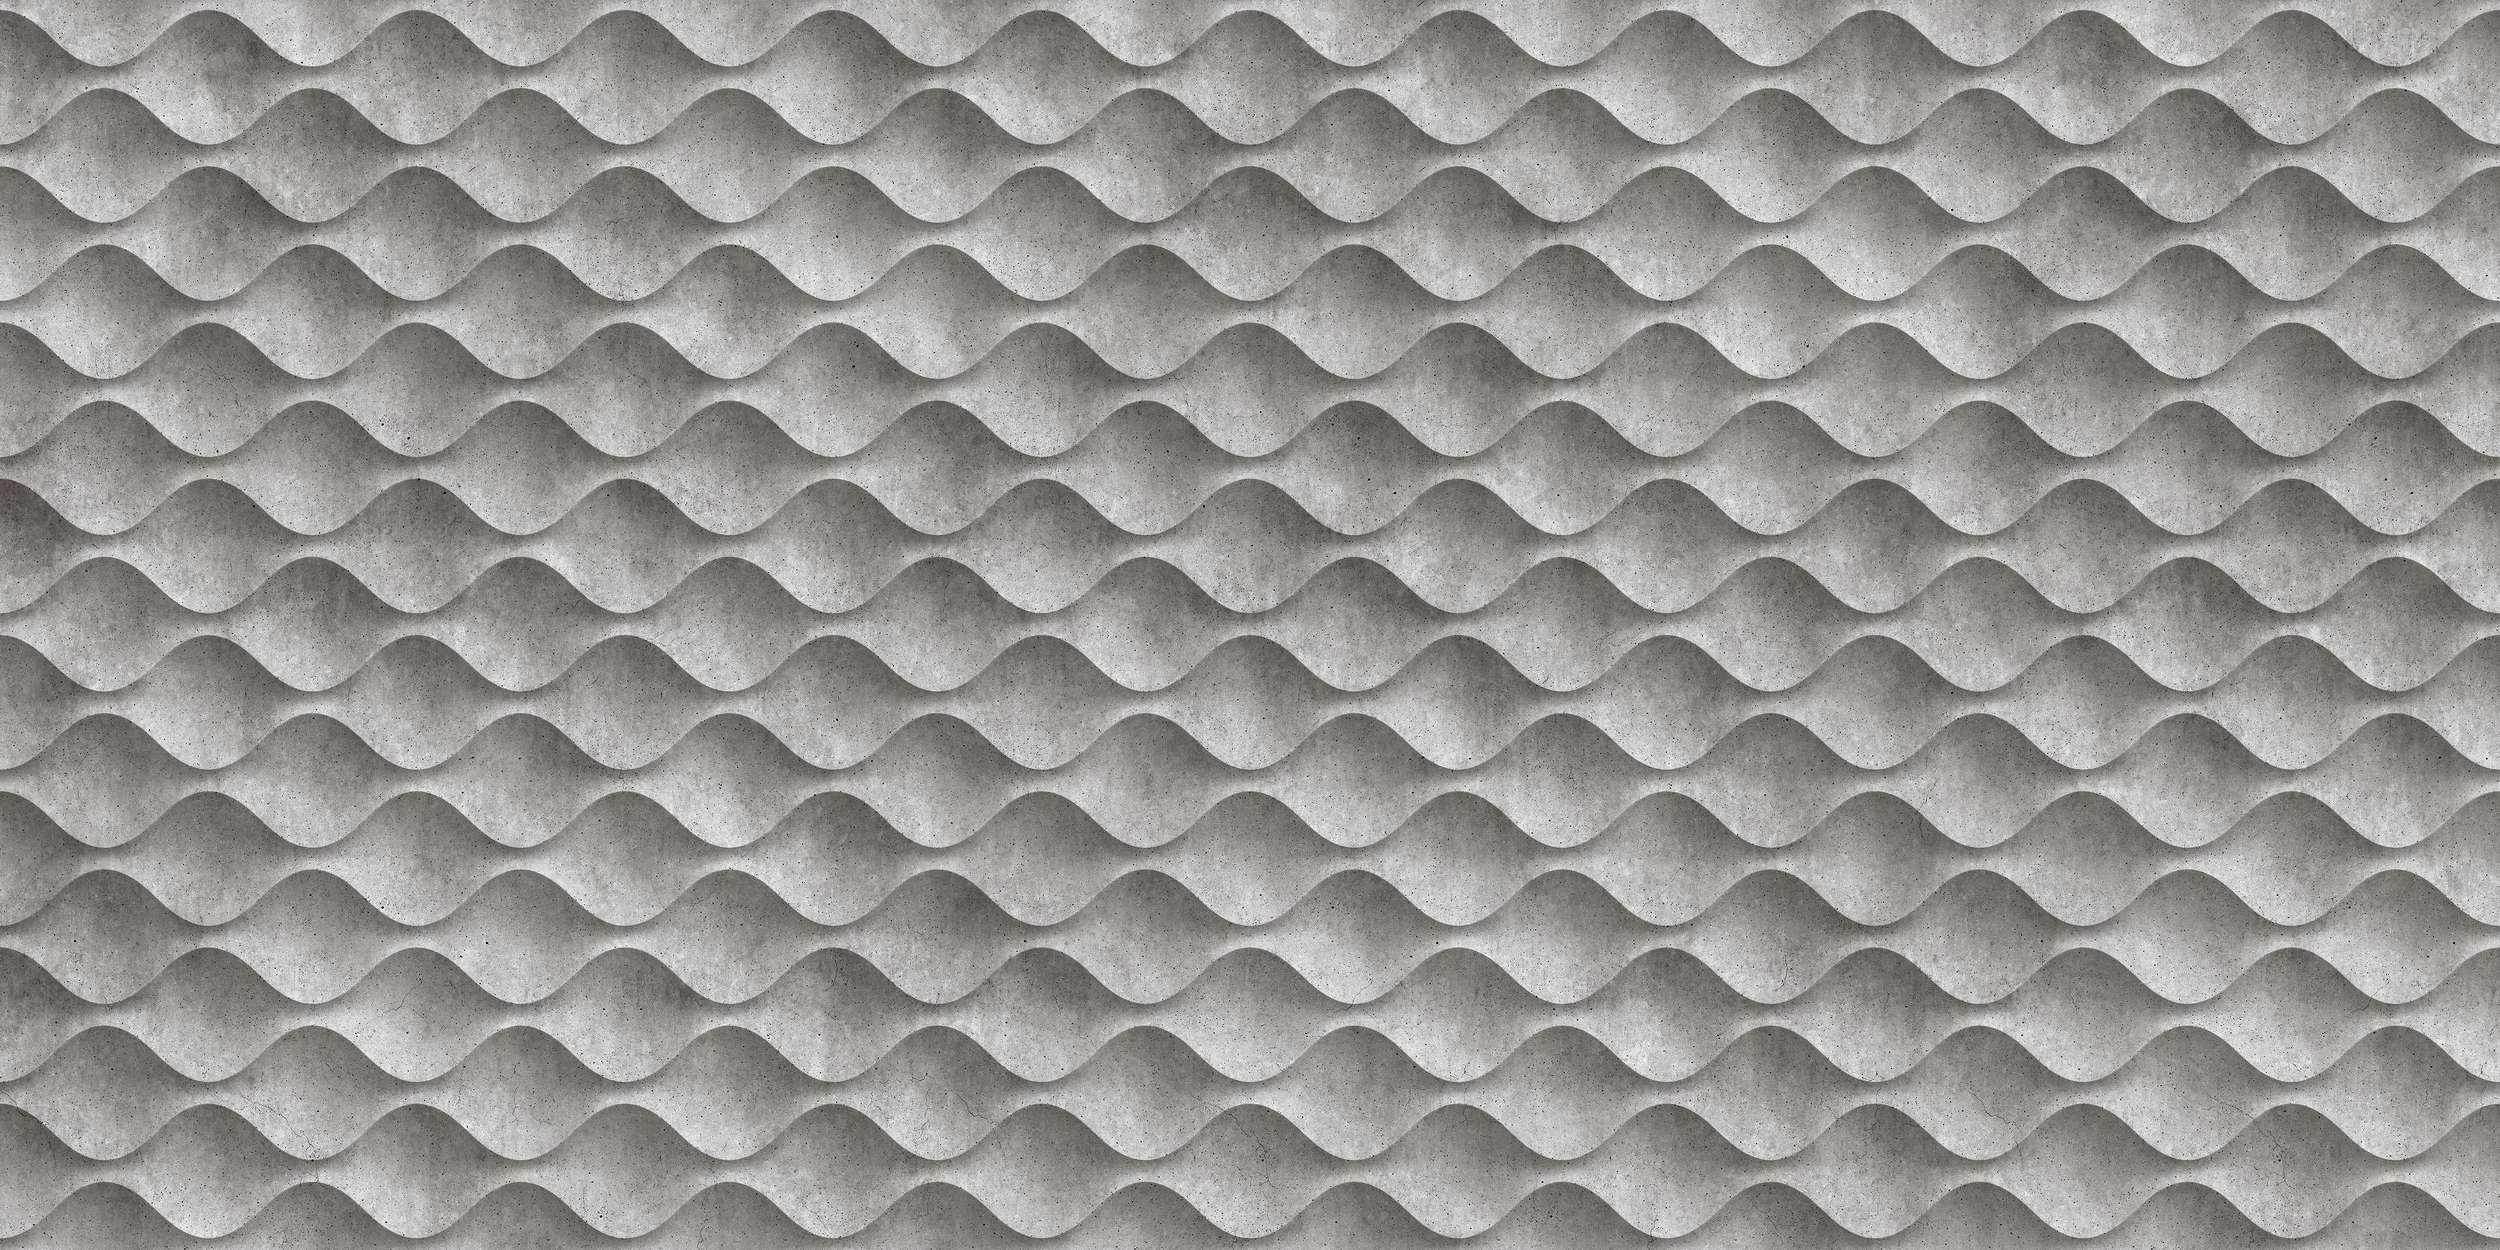             Concrete 1 - Papel pintado Cool 3D Concrete Waves - Gris, Negro | Vellón liso mate
        